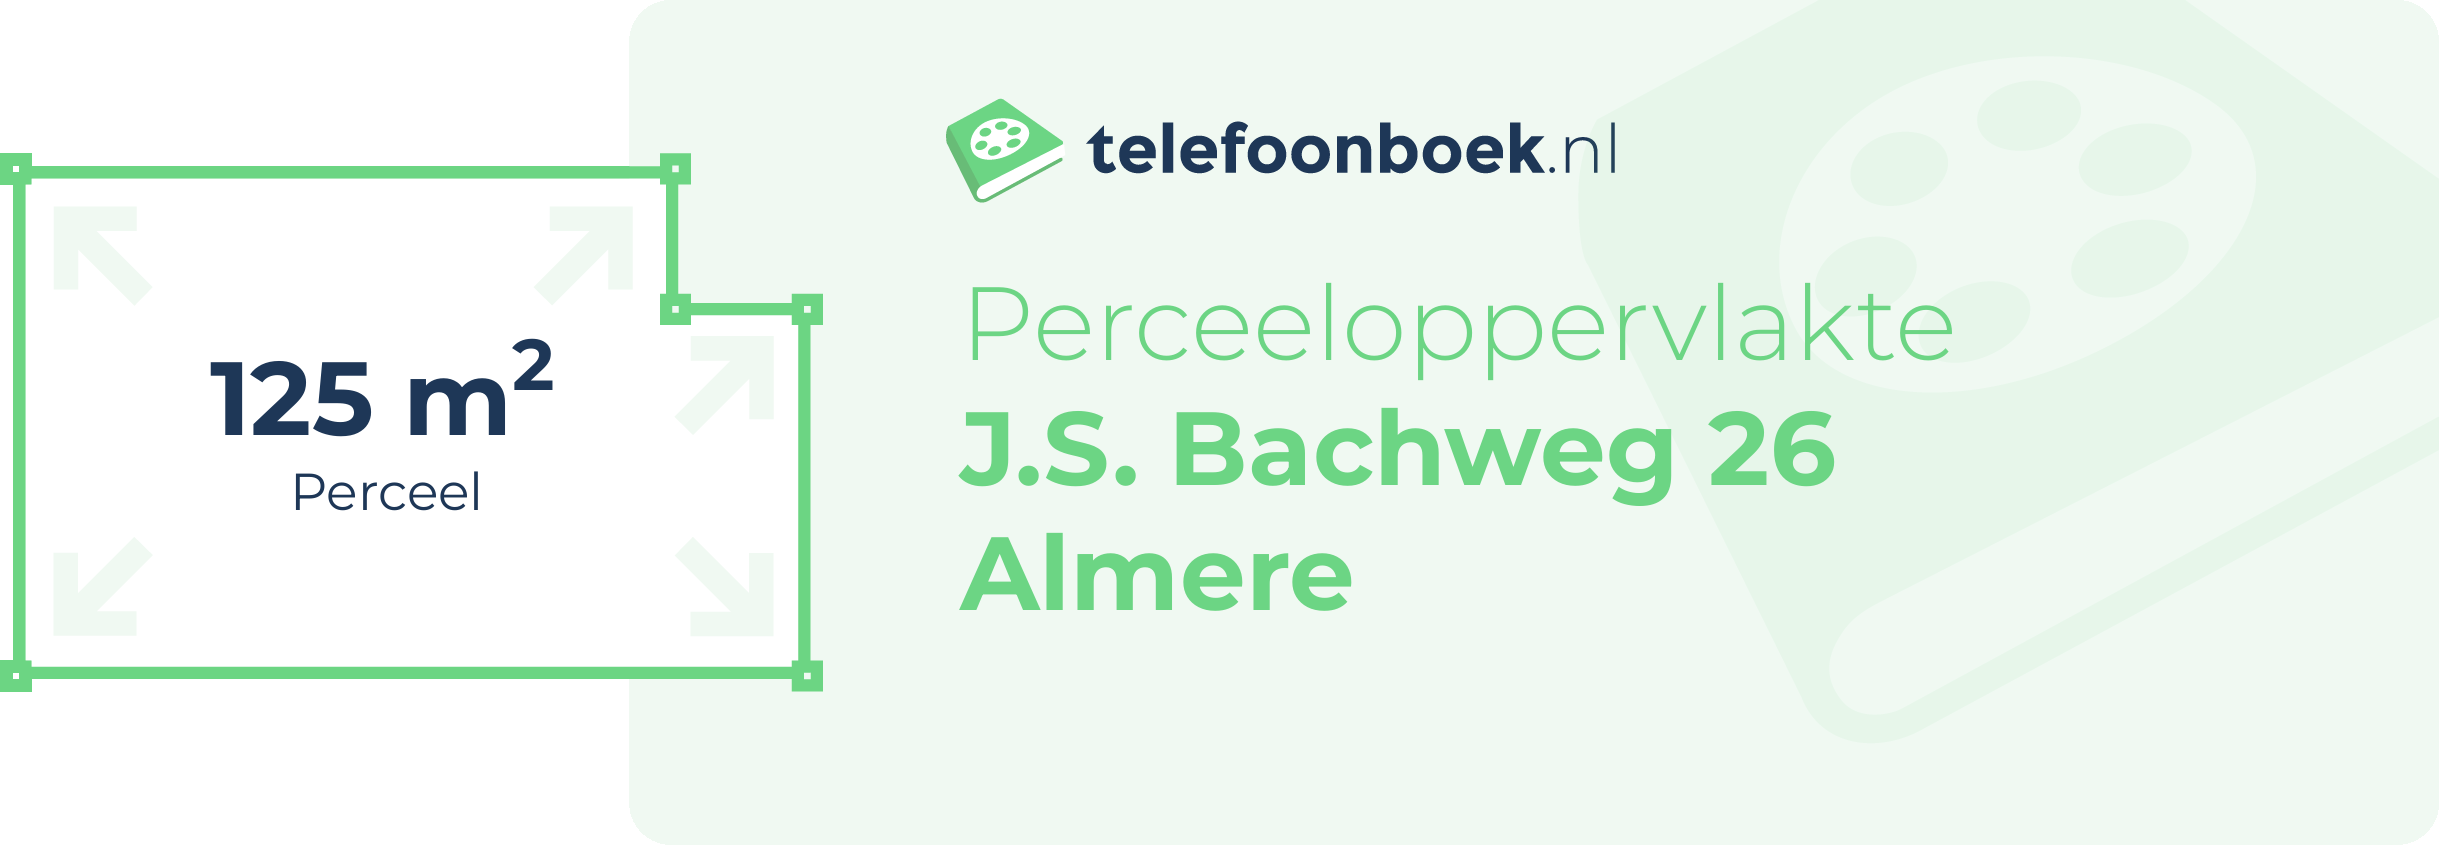 Perceeloppervlakte J.S. Bachweg 26 Almere